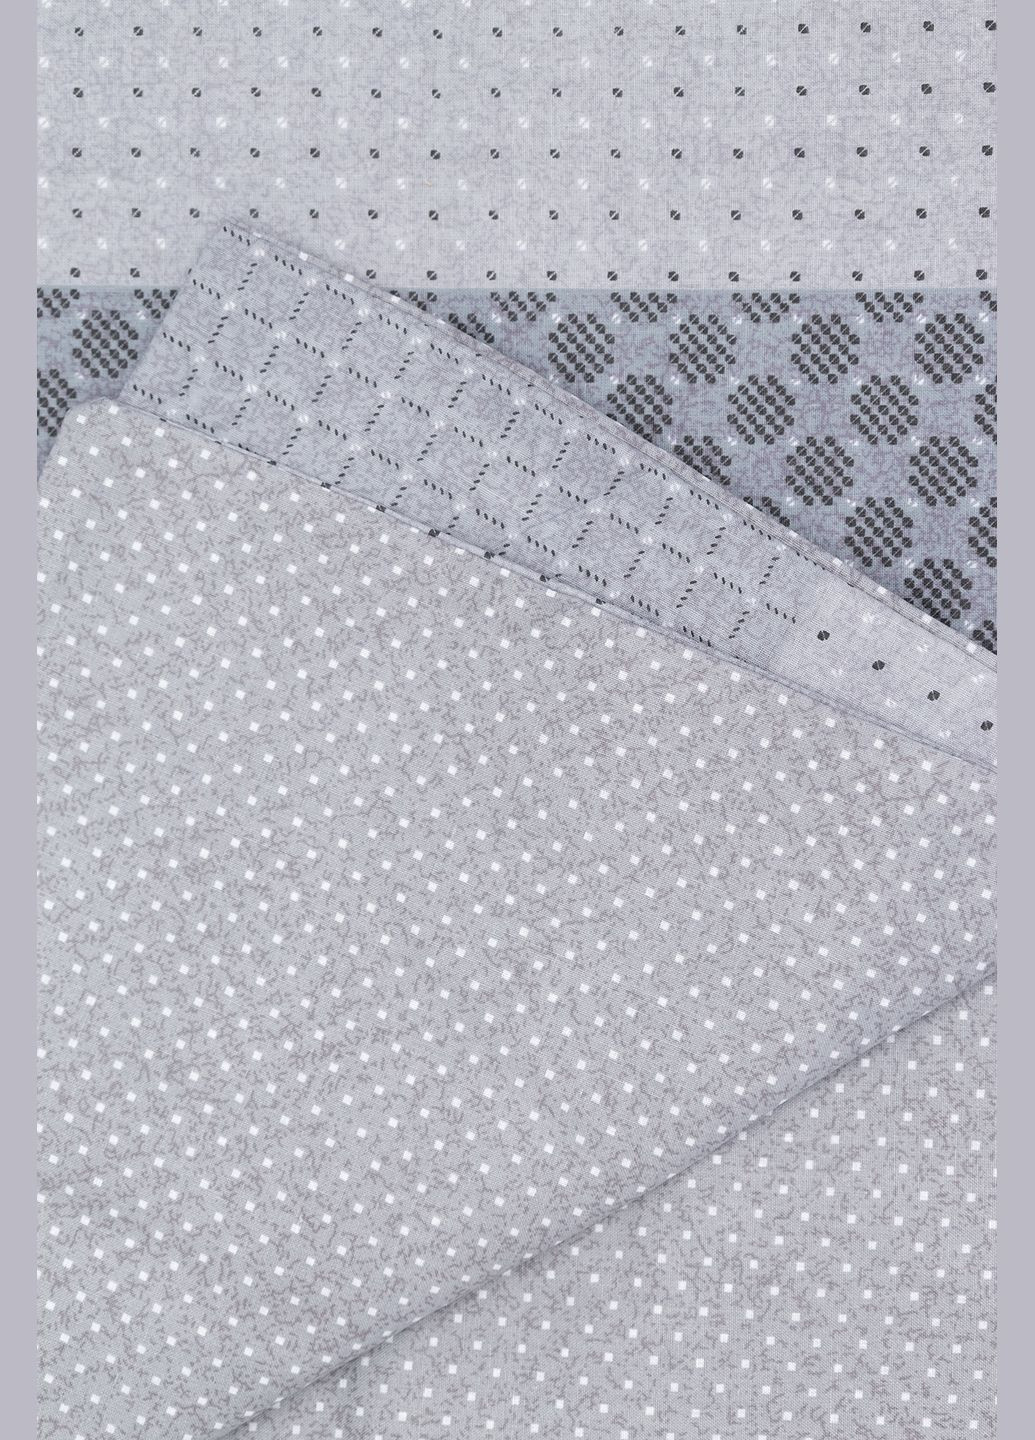 Комплект постельного белья цвет серый ЦБ-00235822 Viluta (285696132)